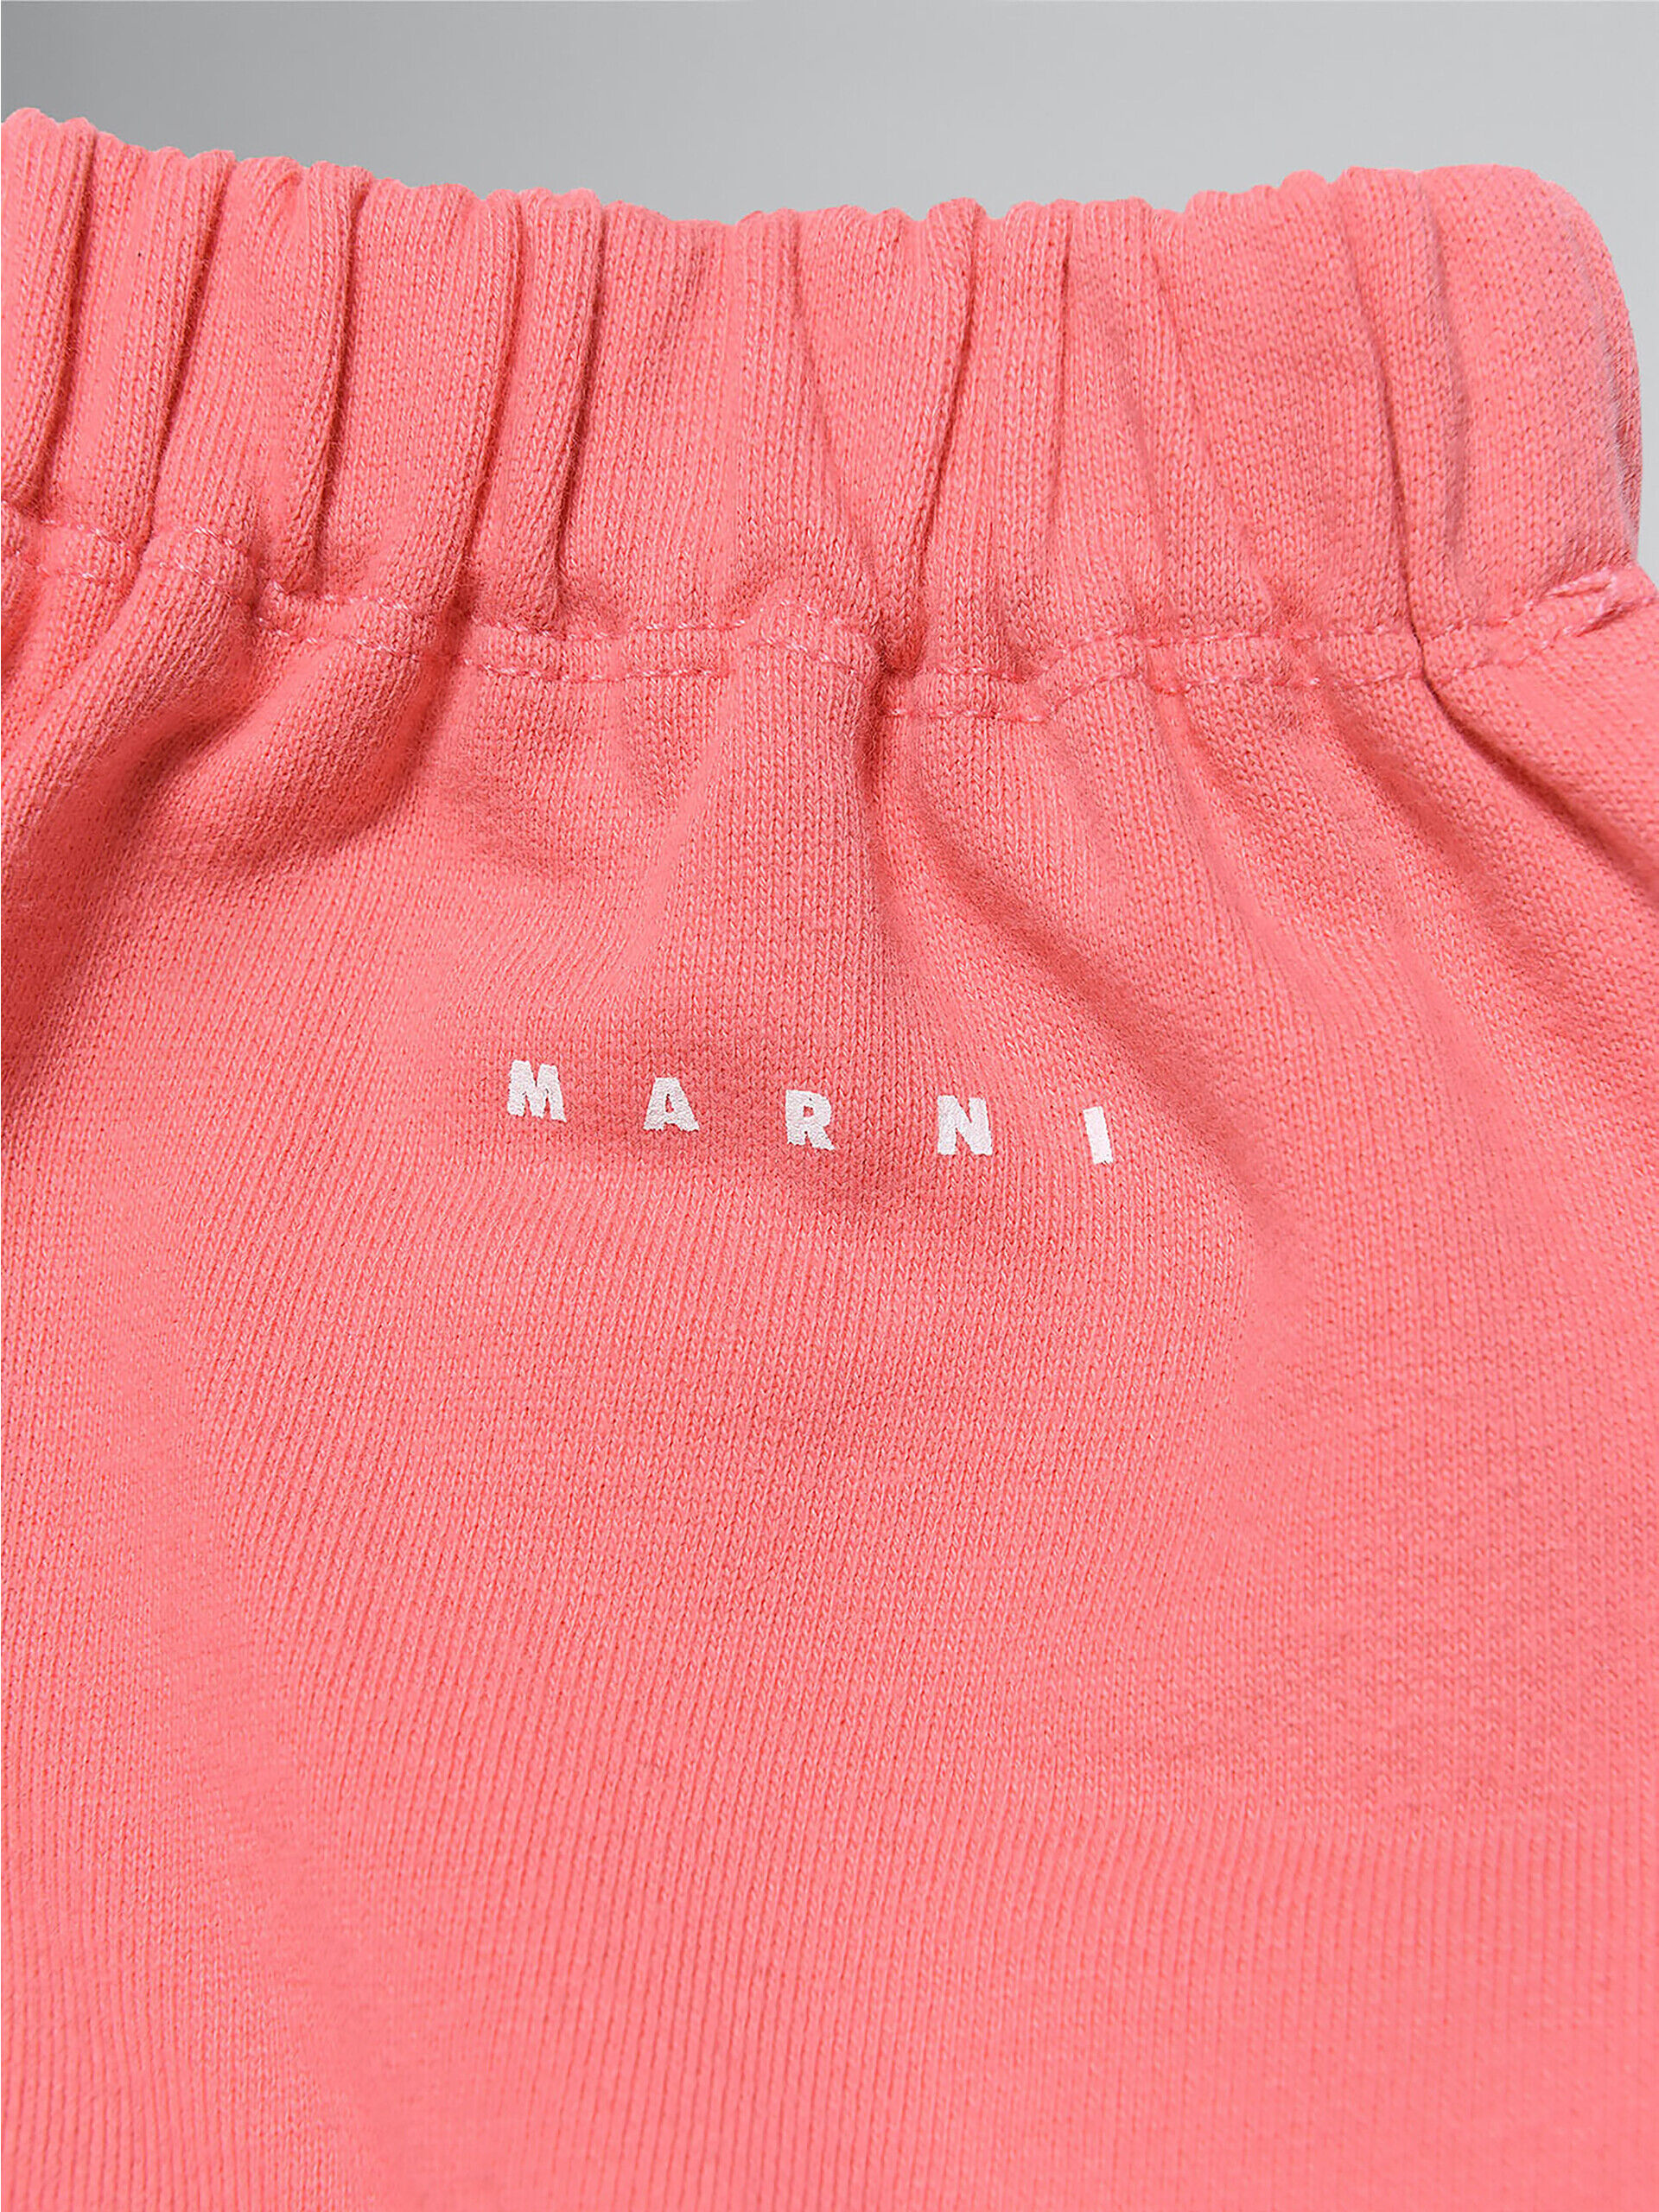 ピンク スパンコール付き フリース製スカート | Marni